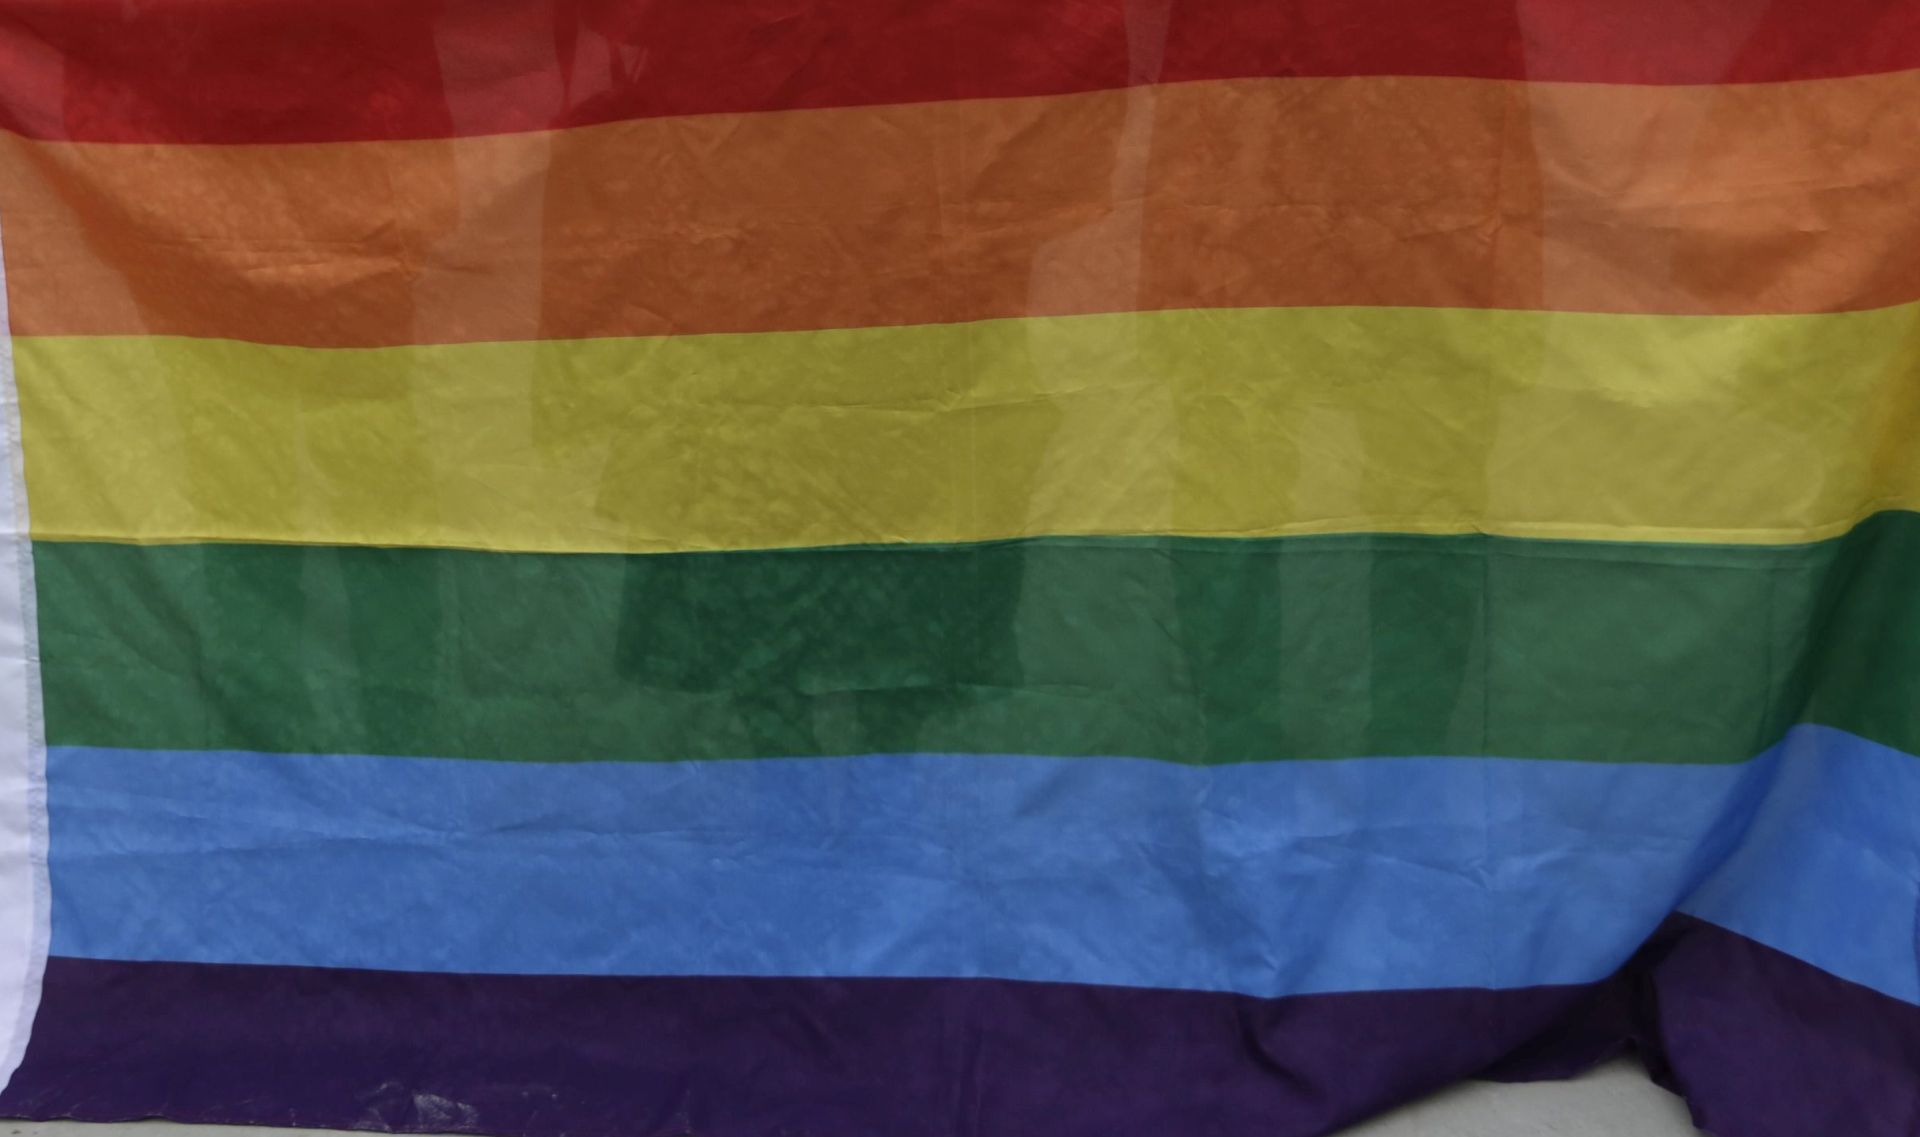 ZAKONSKI PLAN: Grčka će legalizirati homoseksualne zajednice